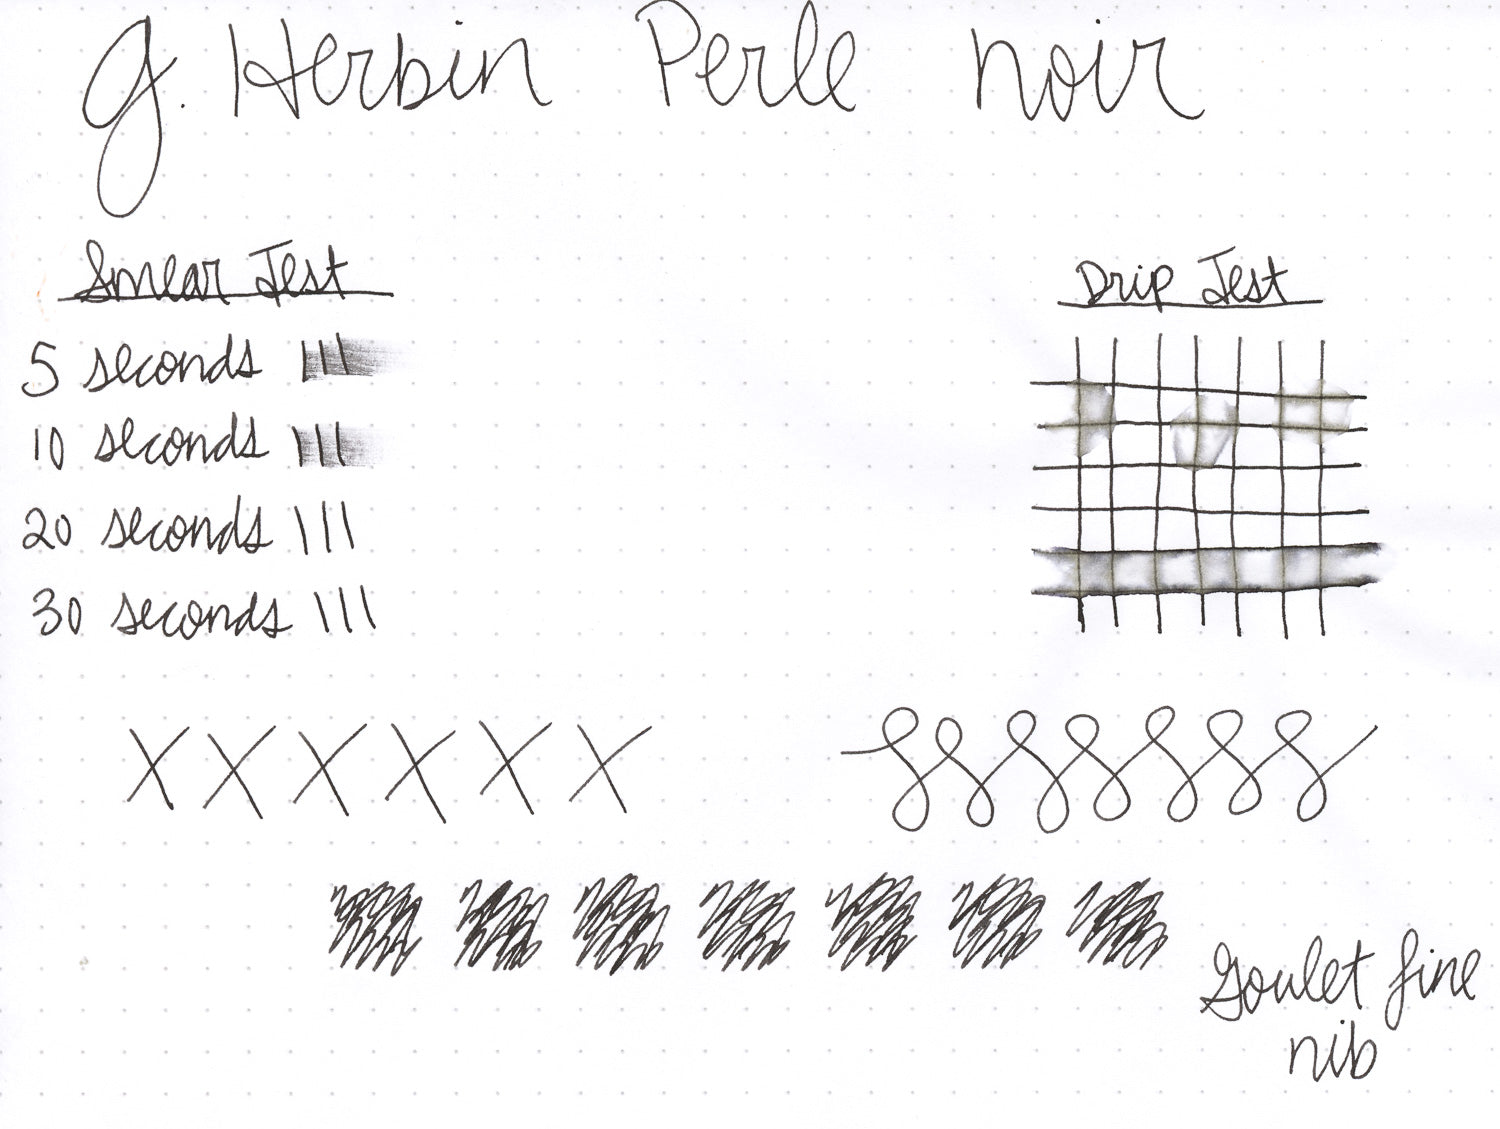 Herbin Perle Noire - 100ml Bottled Ink